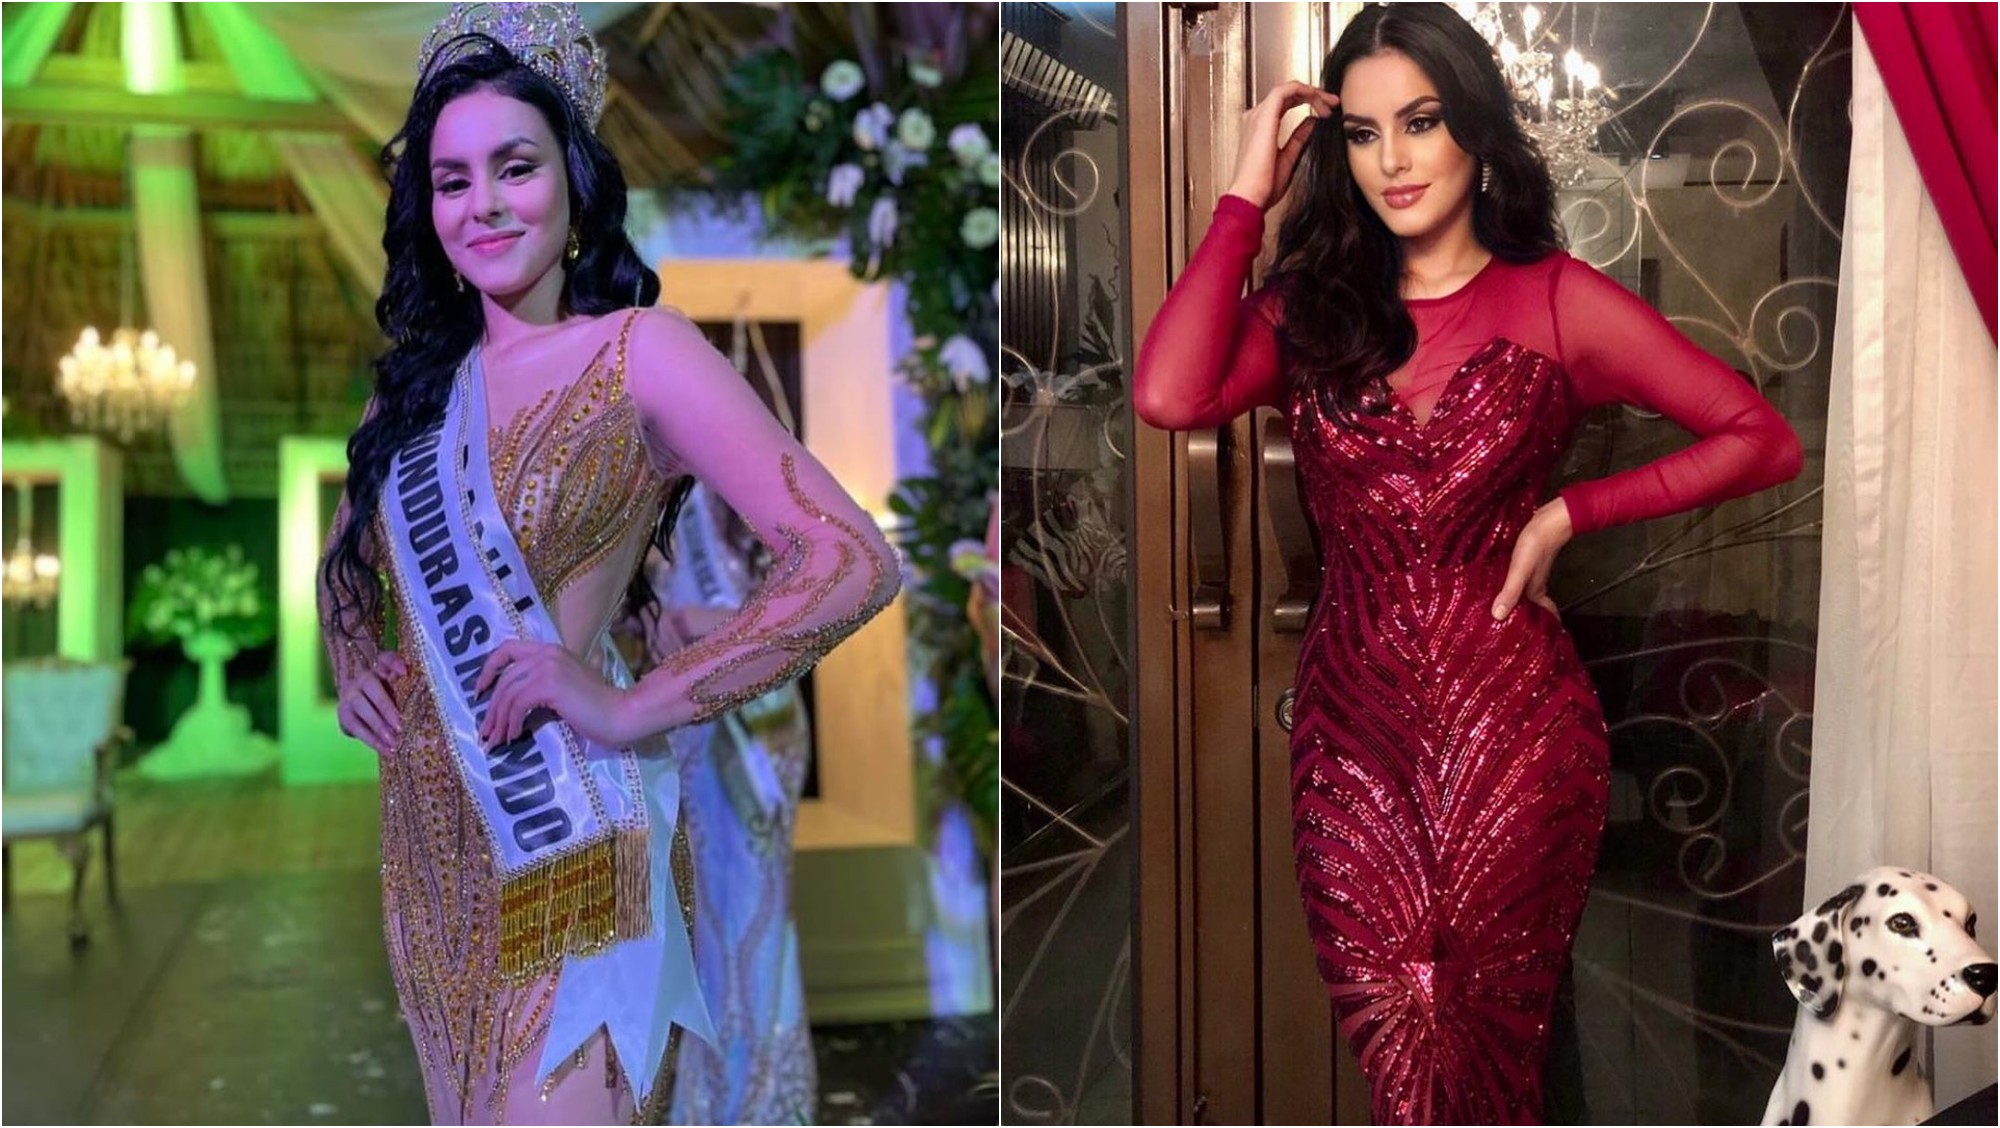 Datos curiosos de la nueva Miss Honduras Mundo, Yelsin Almendares